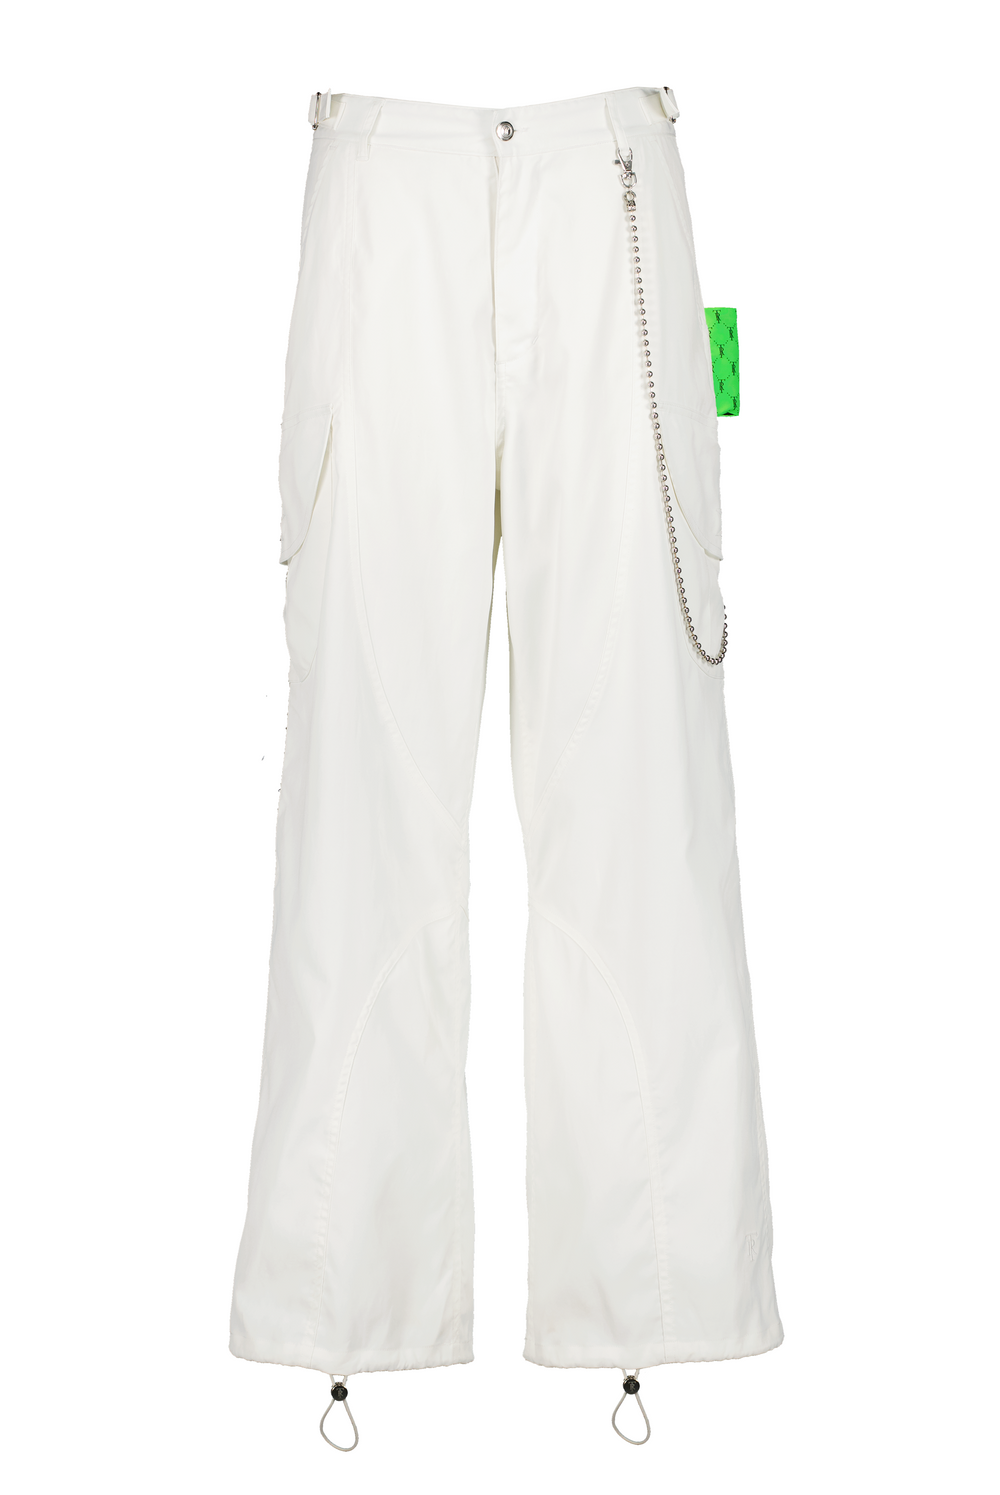 White Cross Fit Cargo Pants - The Uniform Shop Plus - St. John's NL